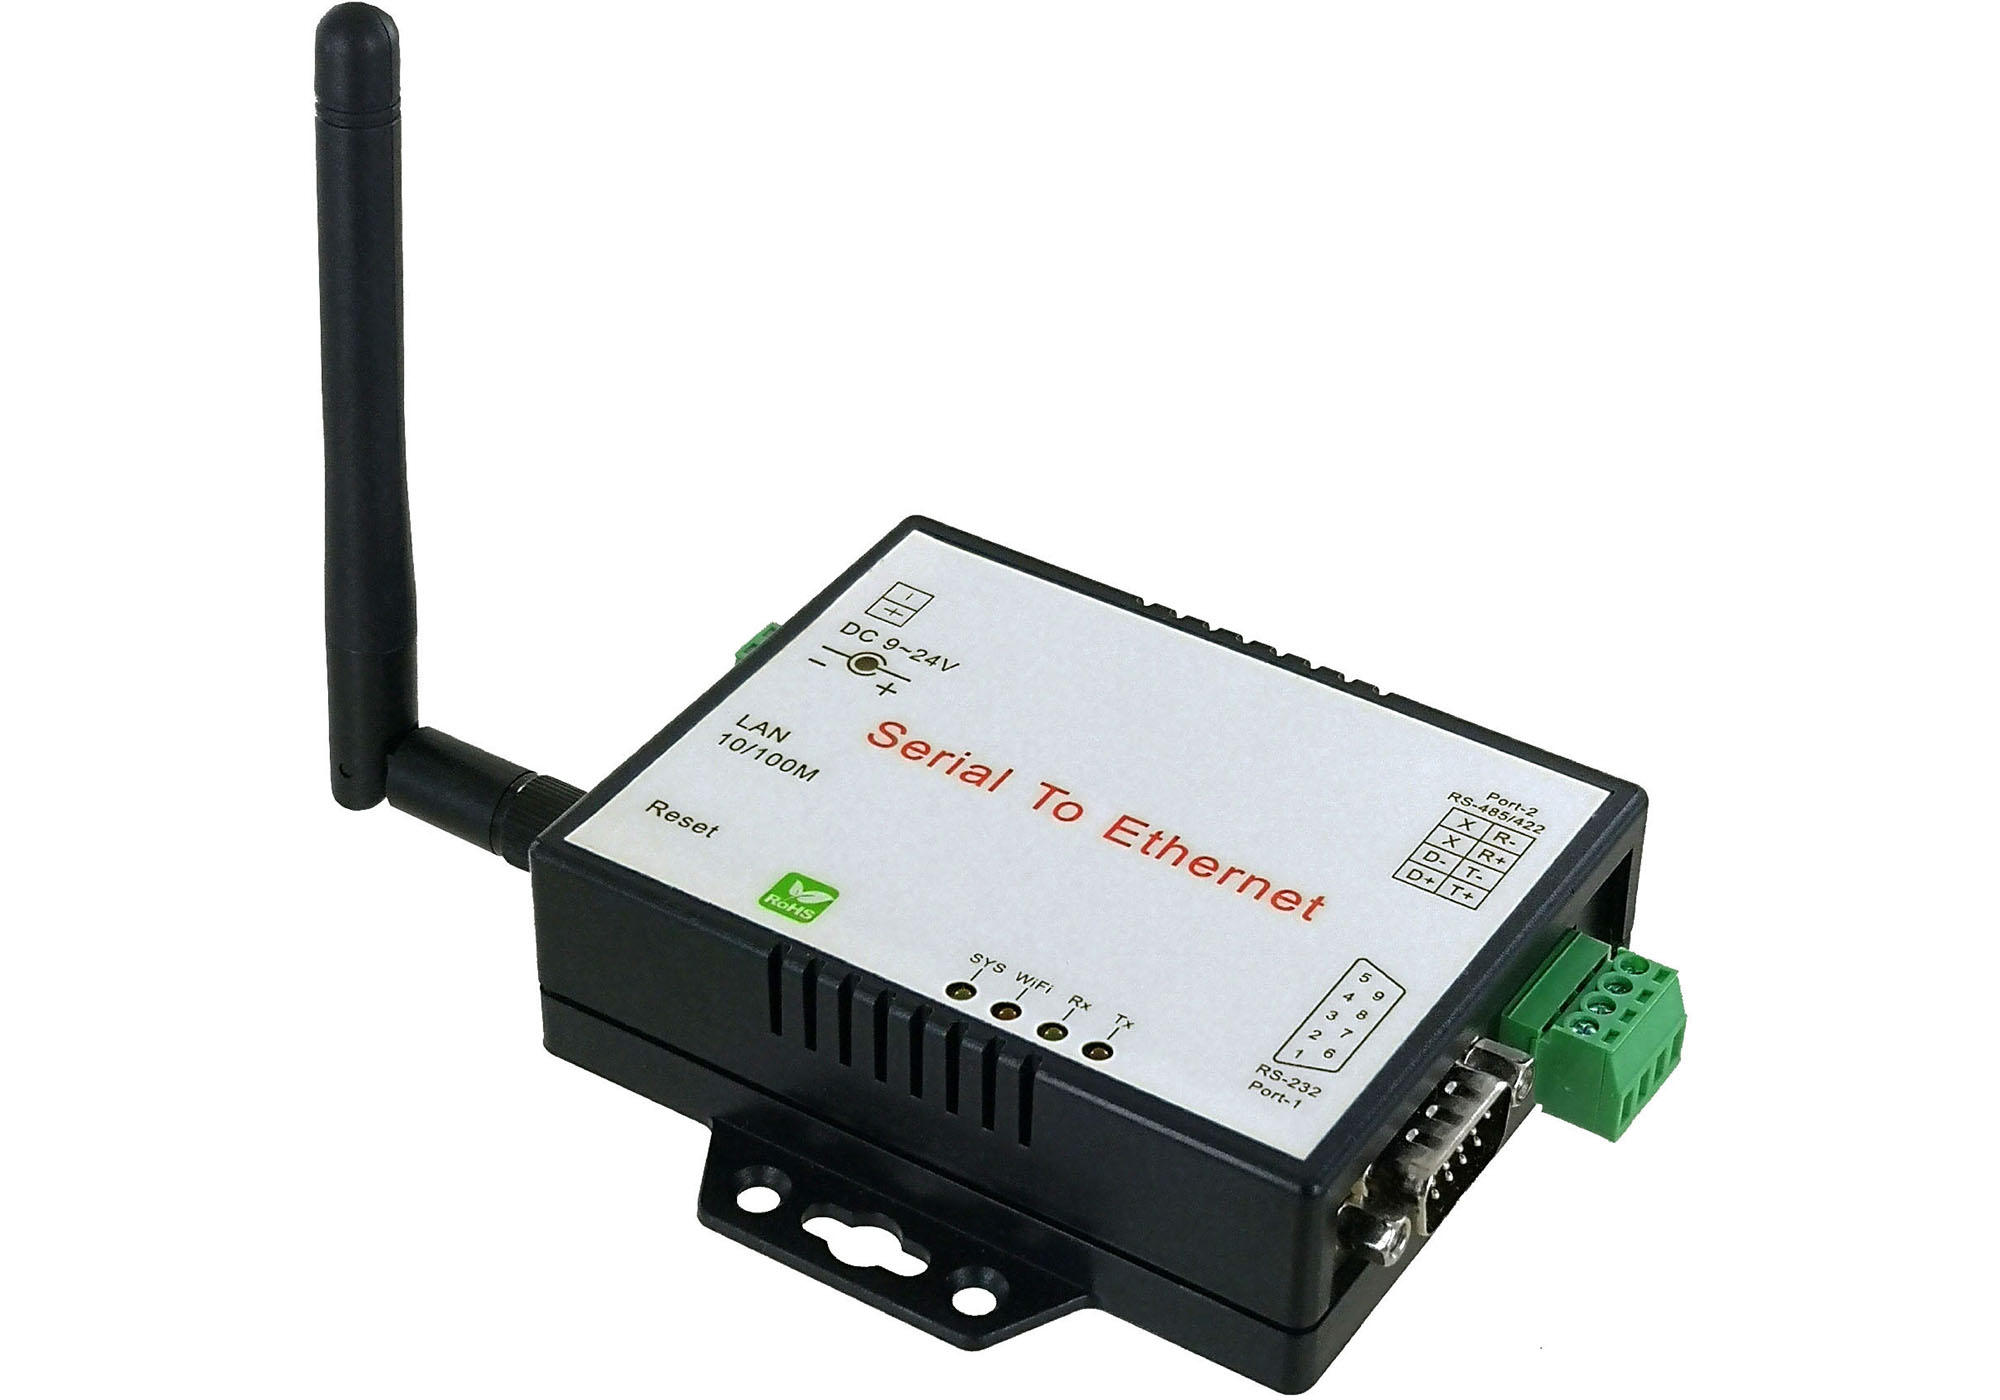 Modbus LAN TCP/IP to Modbus RS485 RTU Serial Converter